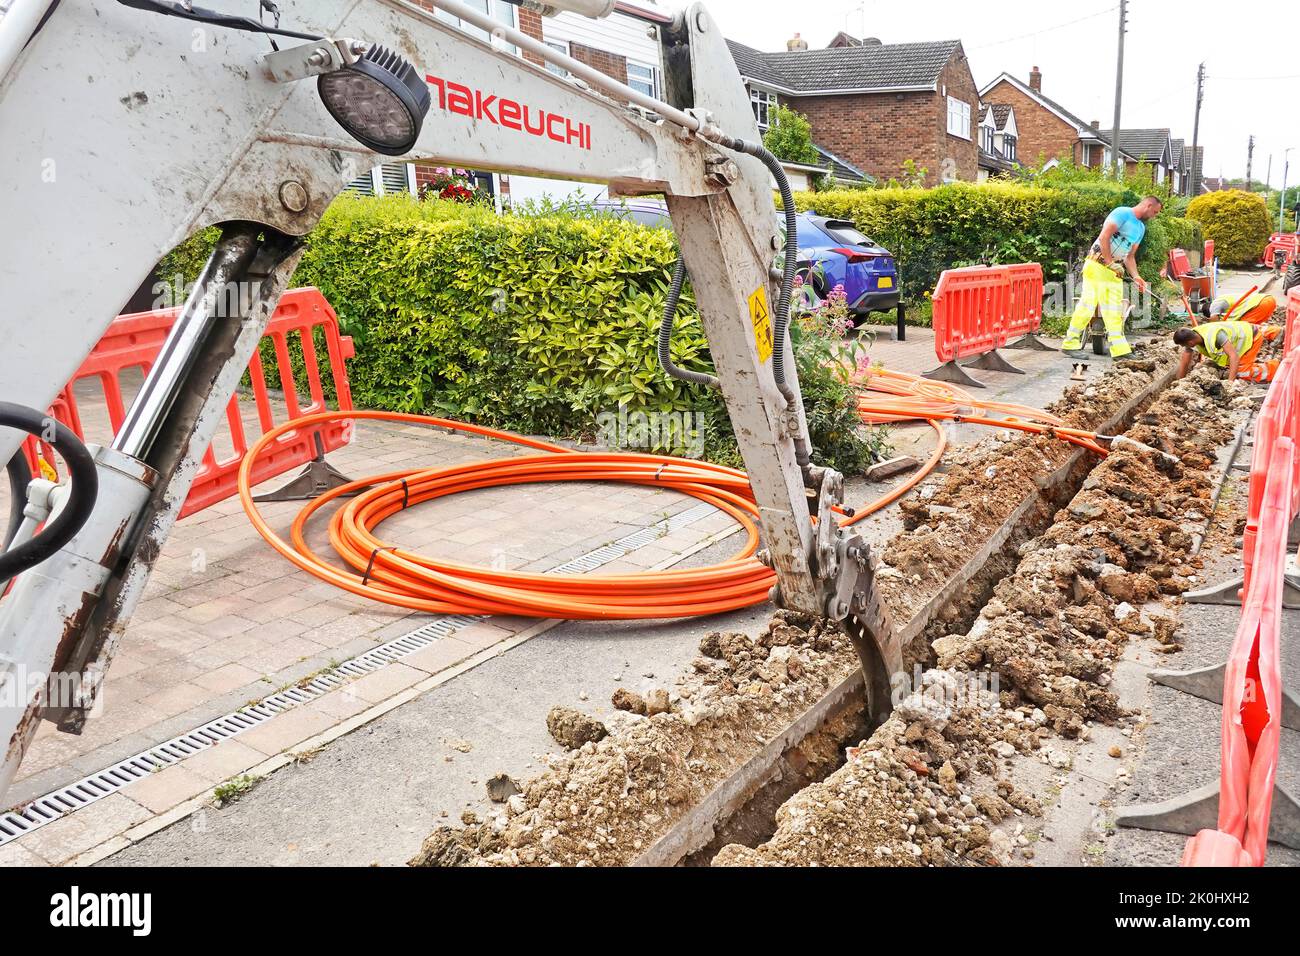 Mini-excavateur de recul excavateur creusez un canal de tranchée étroit dans la chaussée pour le câble à large bande en fibre optique orange positionné par les ouvriers Angleterre Royaume-Uni Banque D'Images